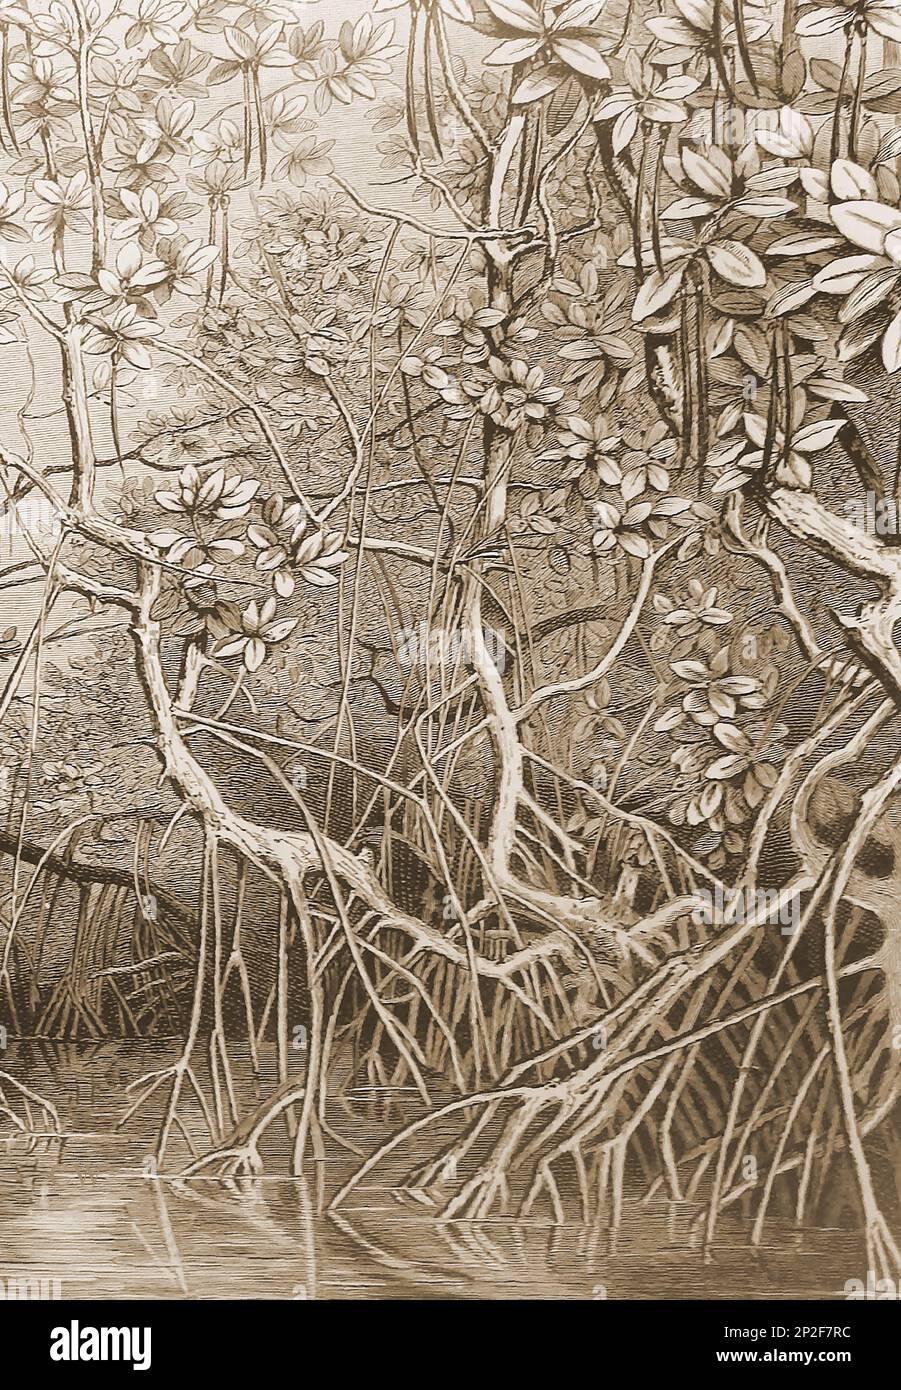 Eine Illustration aus dem 19. Jahrhundert, die zeigt, wie salztolerante Mangroven in Schlamm, Sümpfen und Küstengebieten oder Gezeitenzonen wachsen und sich durch schleichende Wurzeln verbreiten. Mangroven haben auch schwimmende Samen, die wegschwimmen und ihre Verbreitung unterstützen. Stockfoto